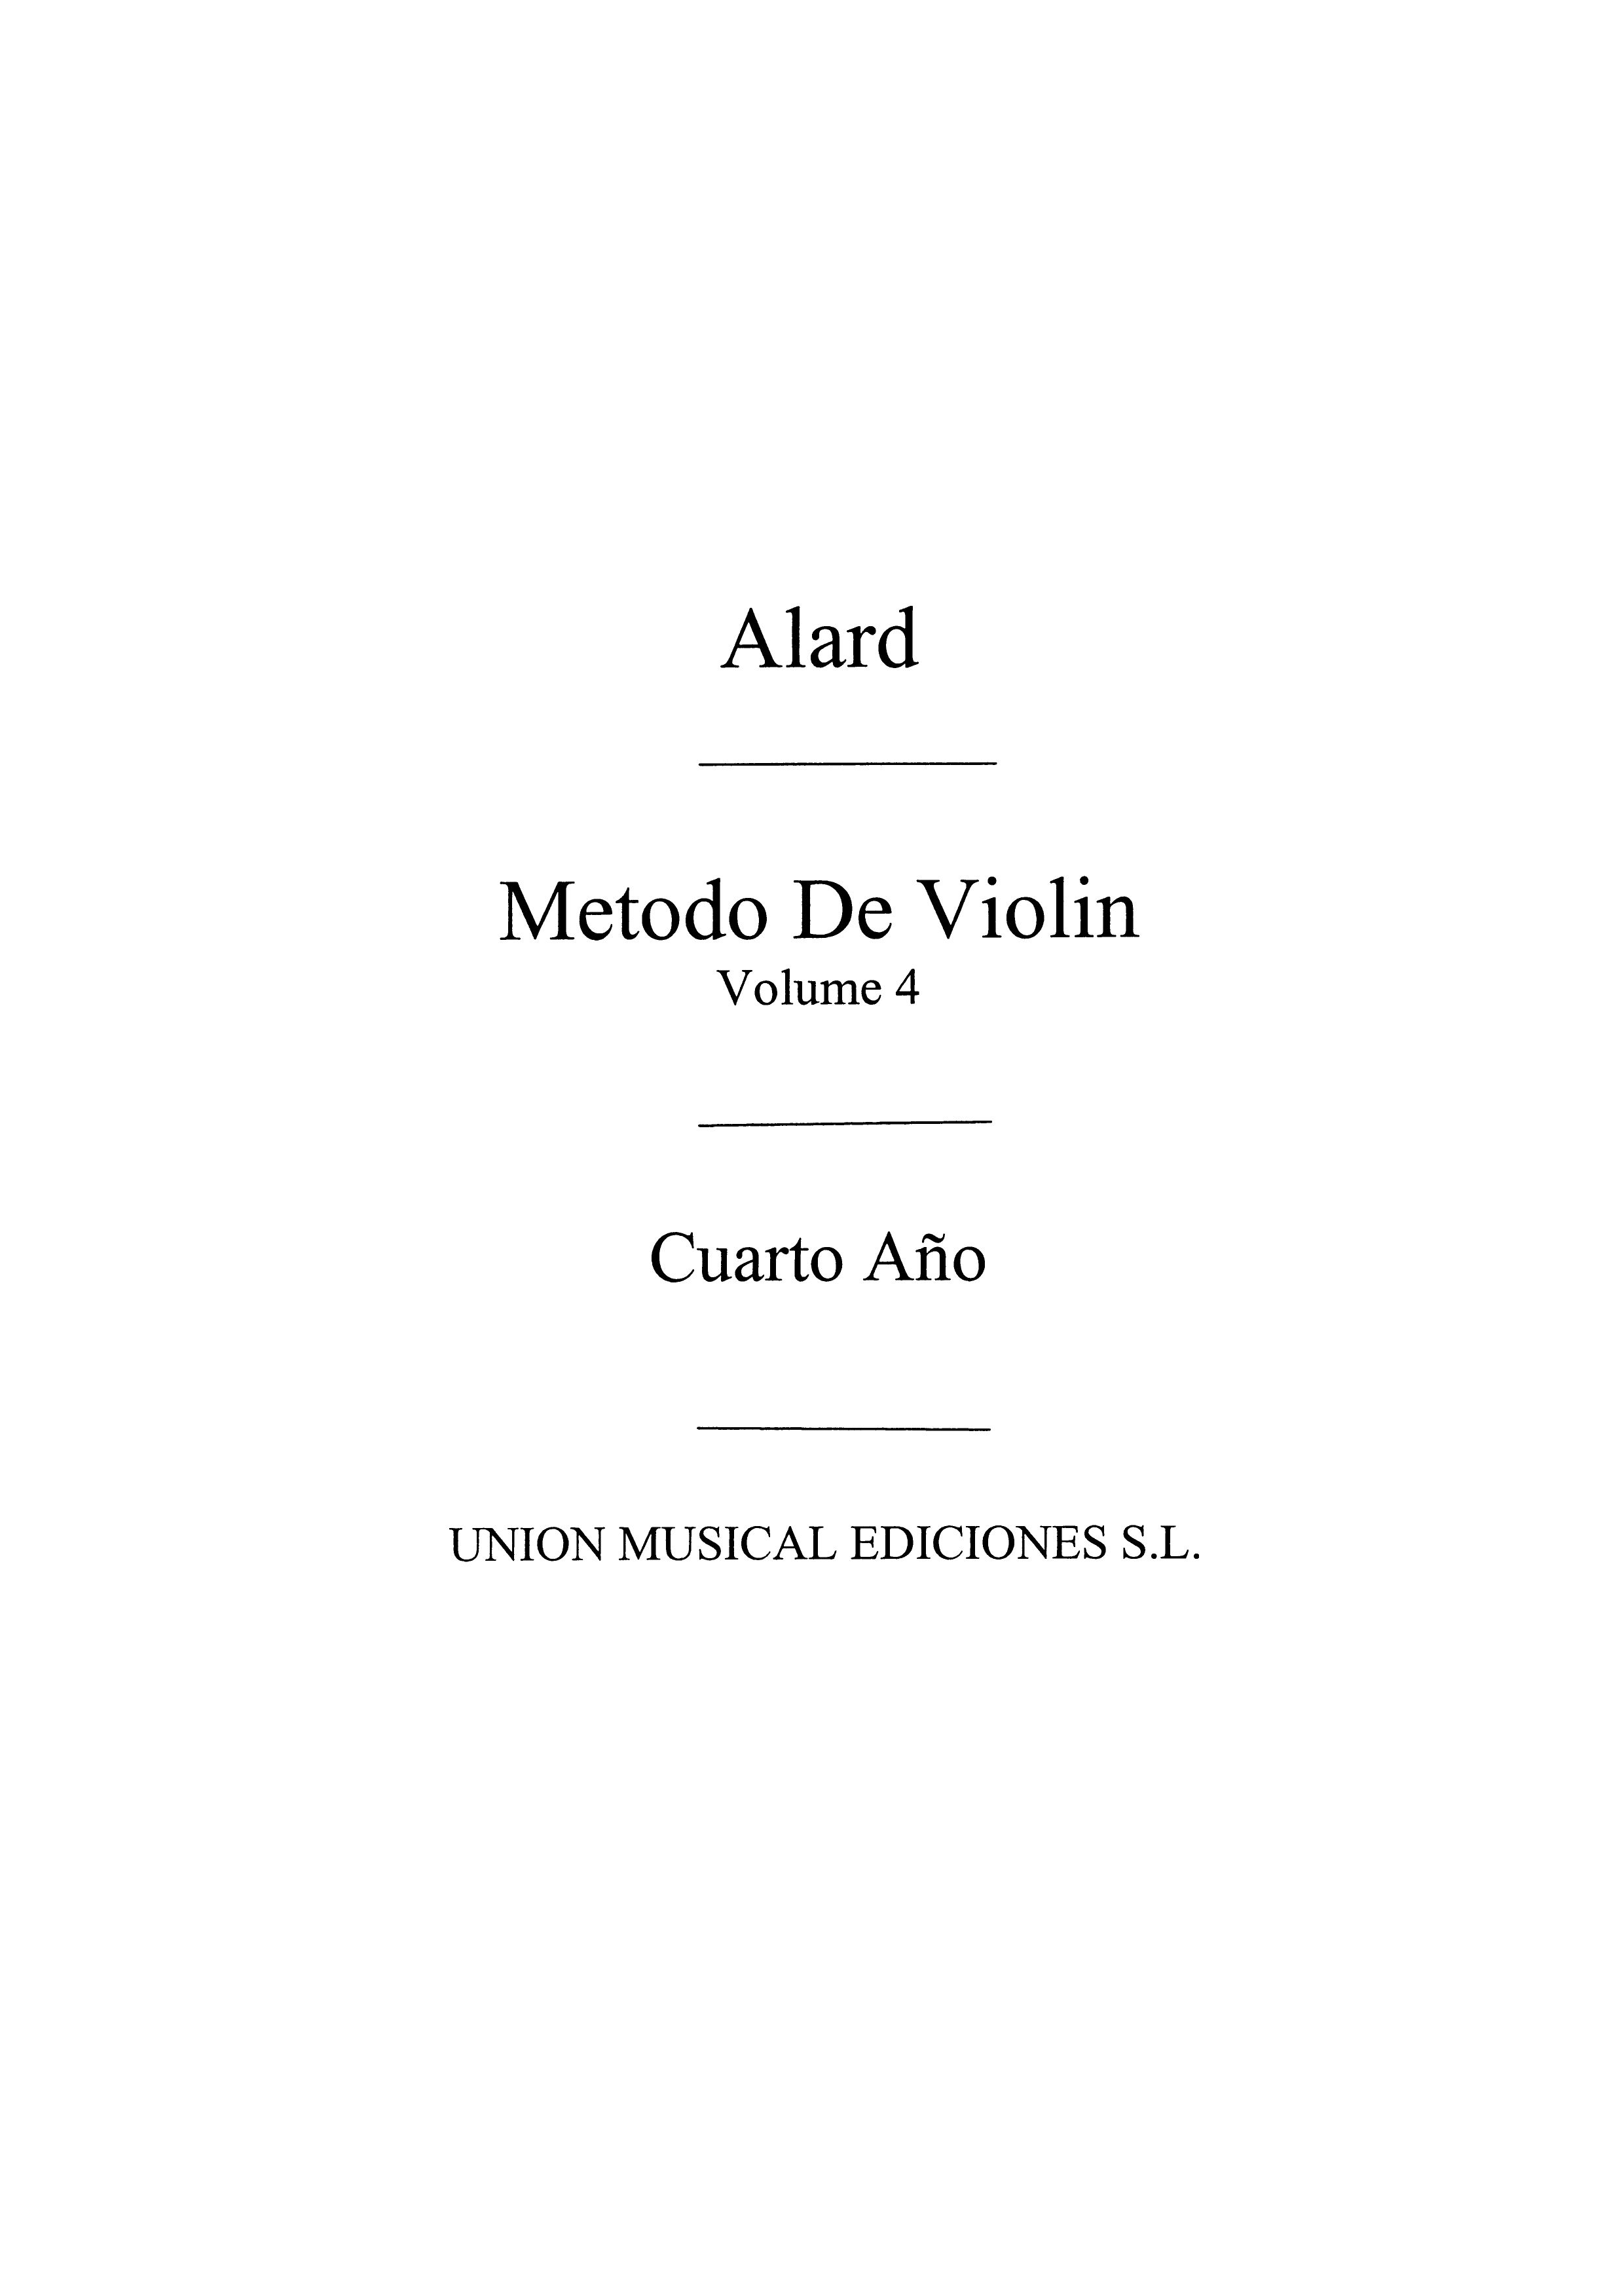 Alard: Metodo Violin Volume 4